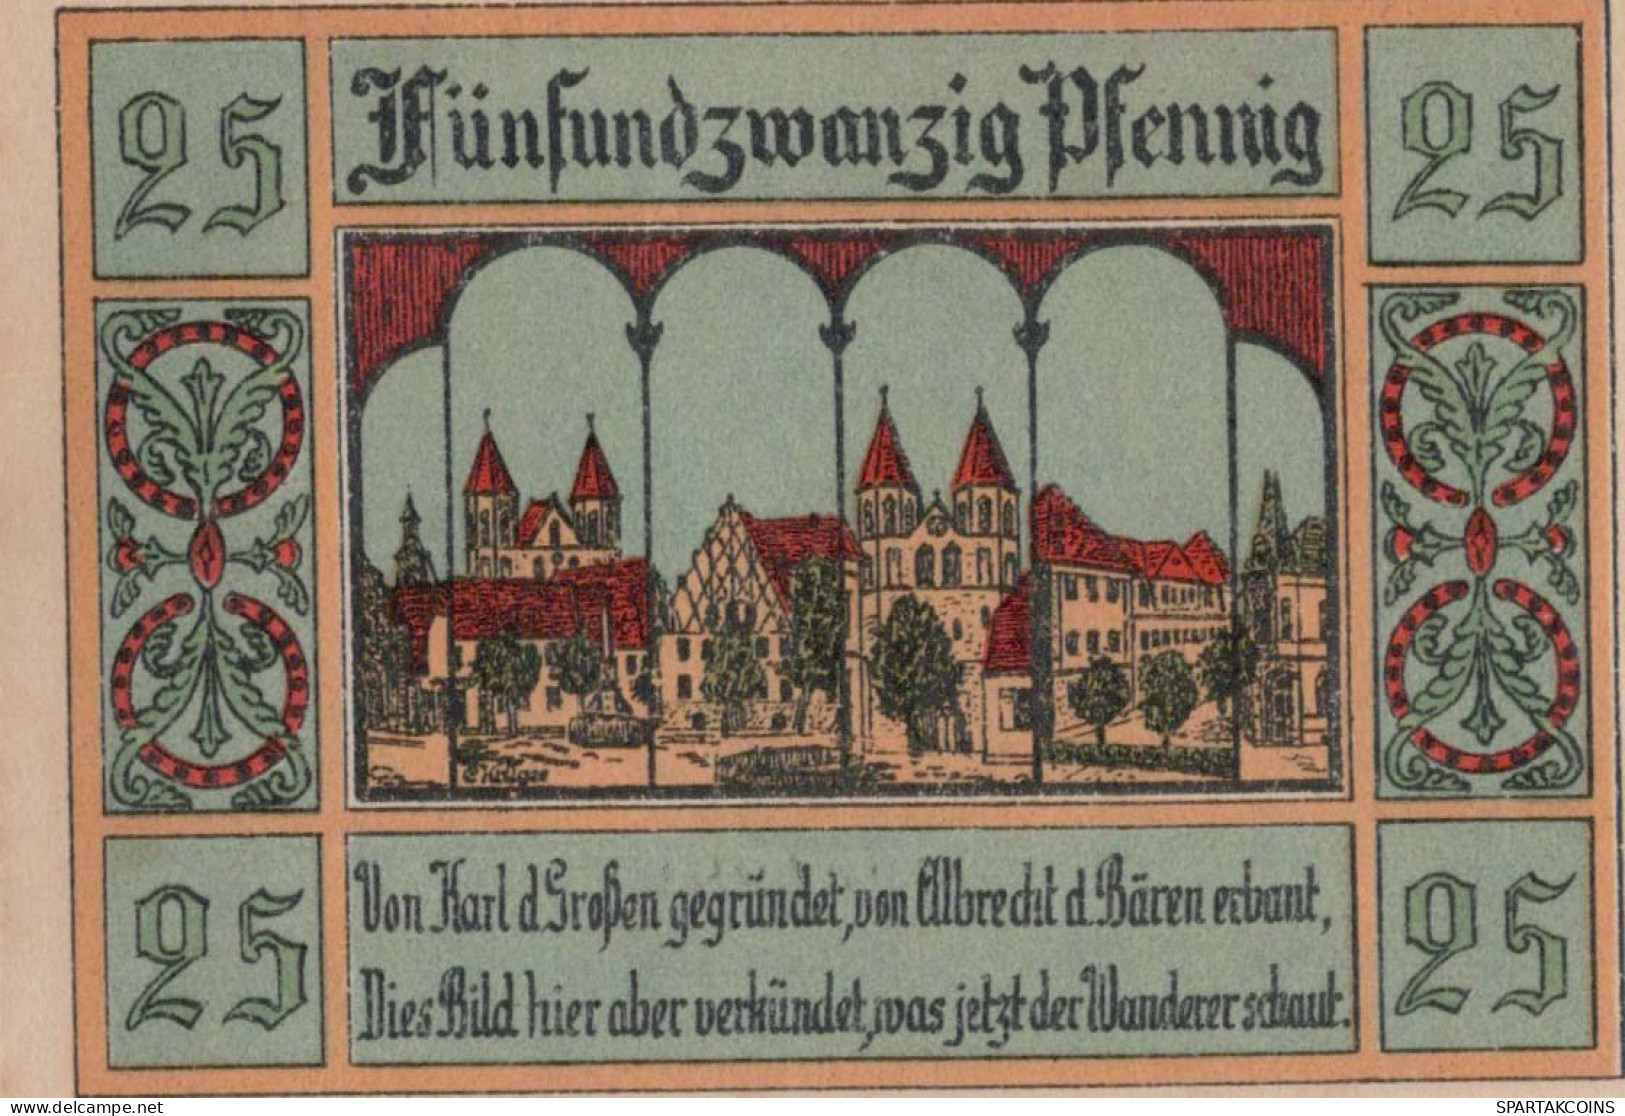 25 PFENNIG 1922 Stadt AKEN Saxony UNC DEUTSCHLAND Notgeld Banknote #PA009 - [11] Local Banknote Issues